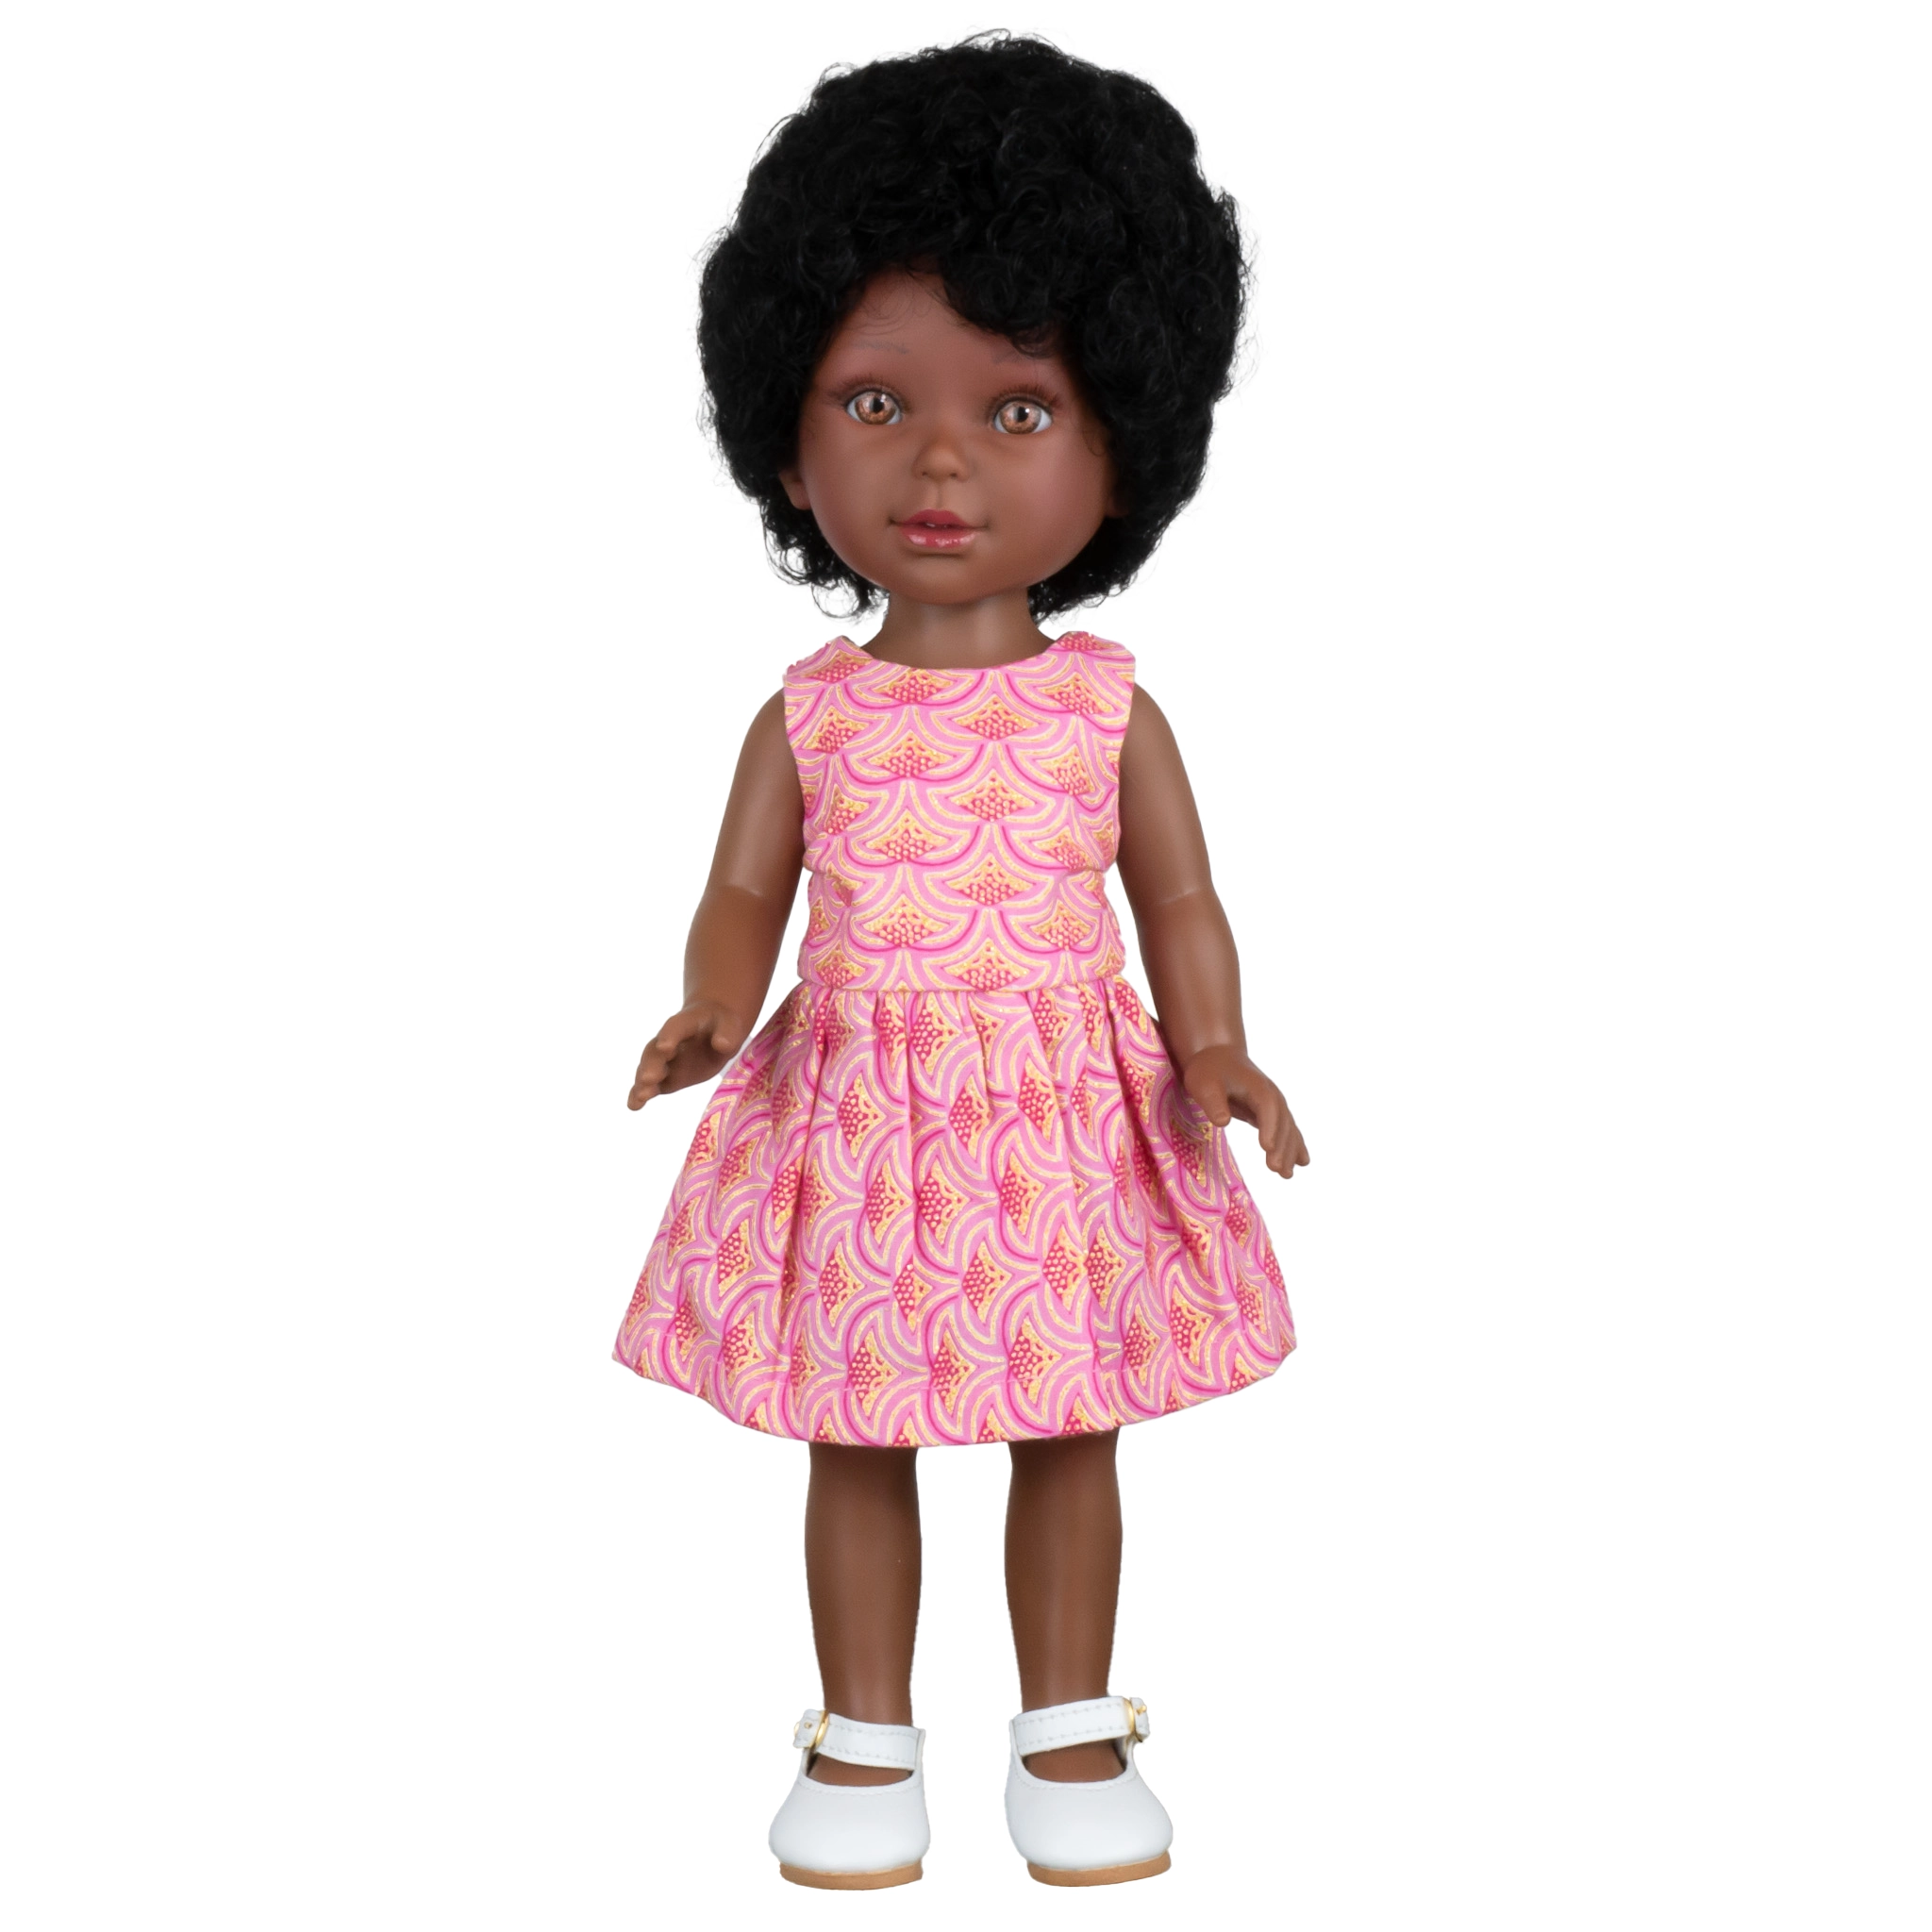 Afro natural hair doll  Natural hair doll, Black baby dolls